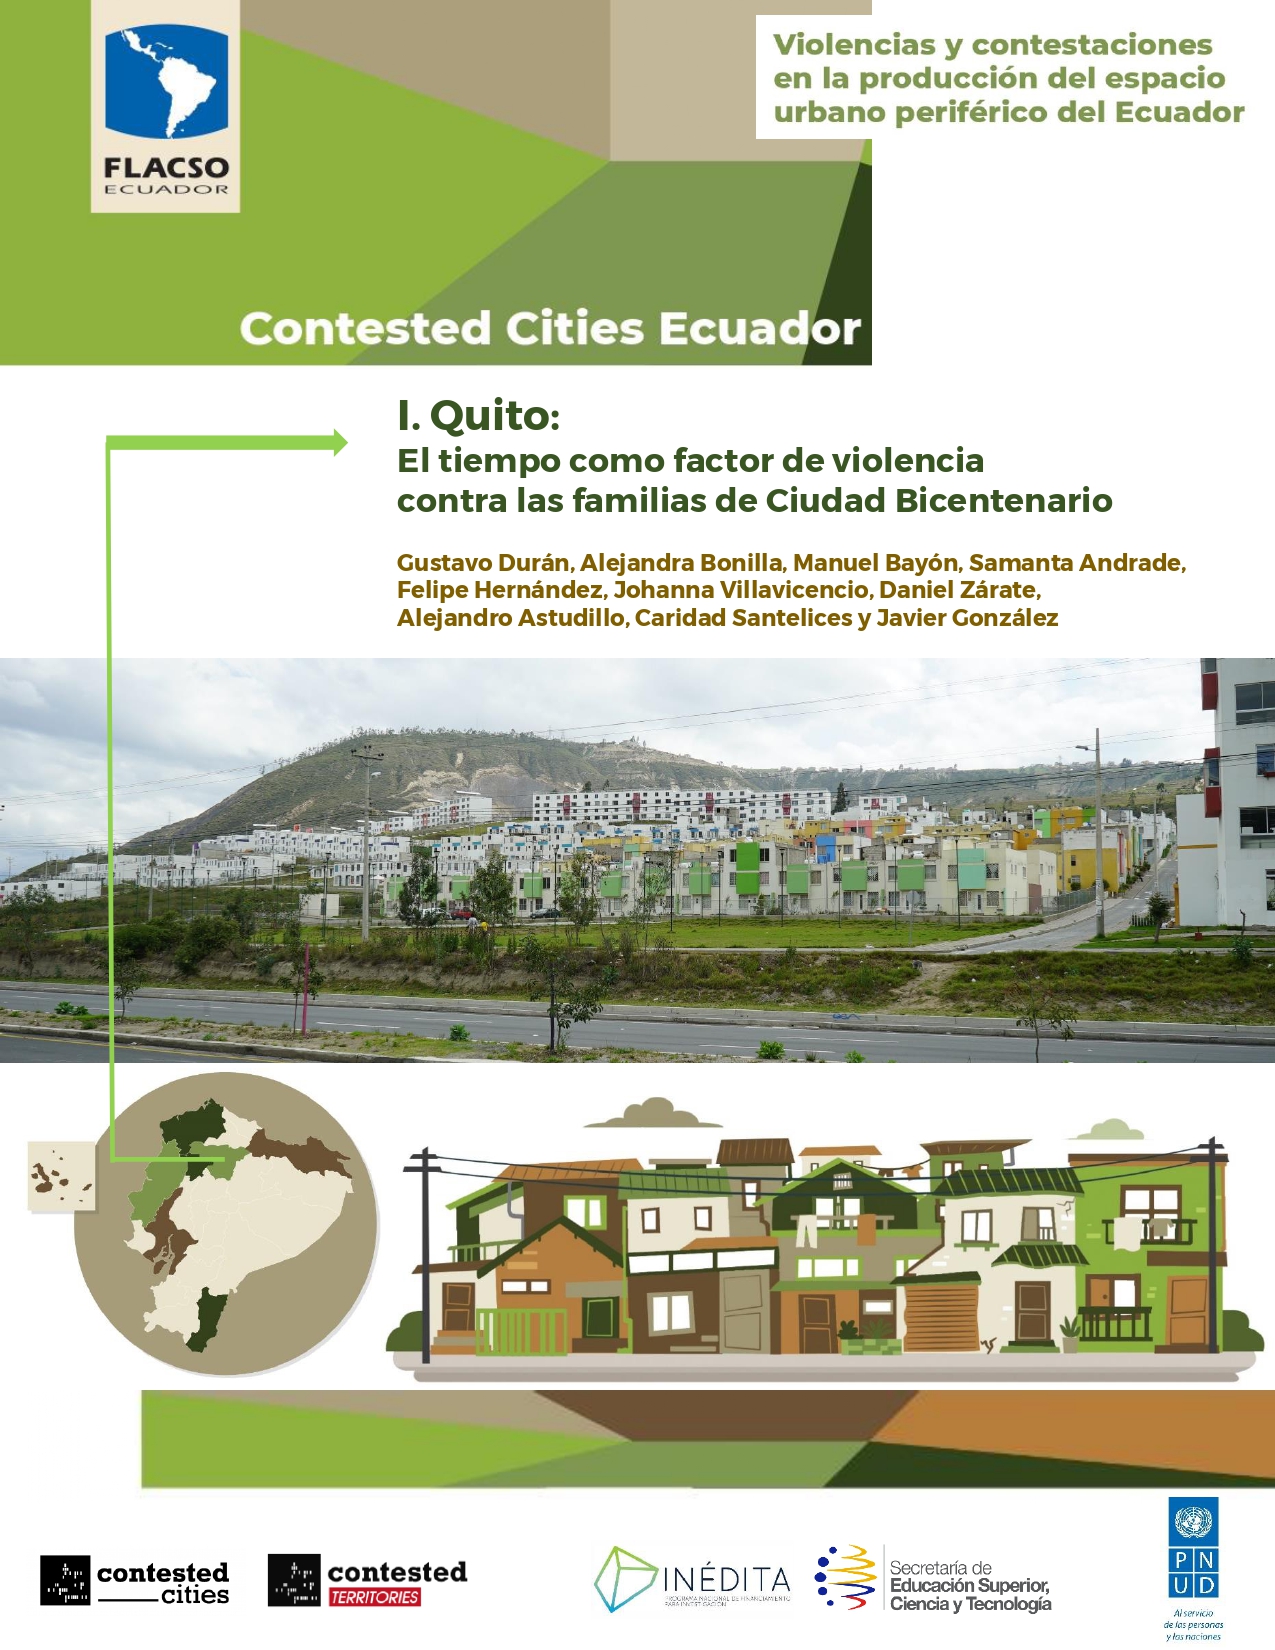 I. Quito: El tiempo como factor de violencia contra las familias de Ciudad Bicentenario